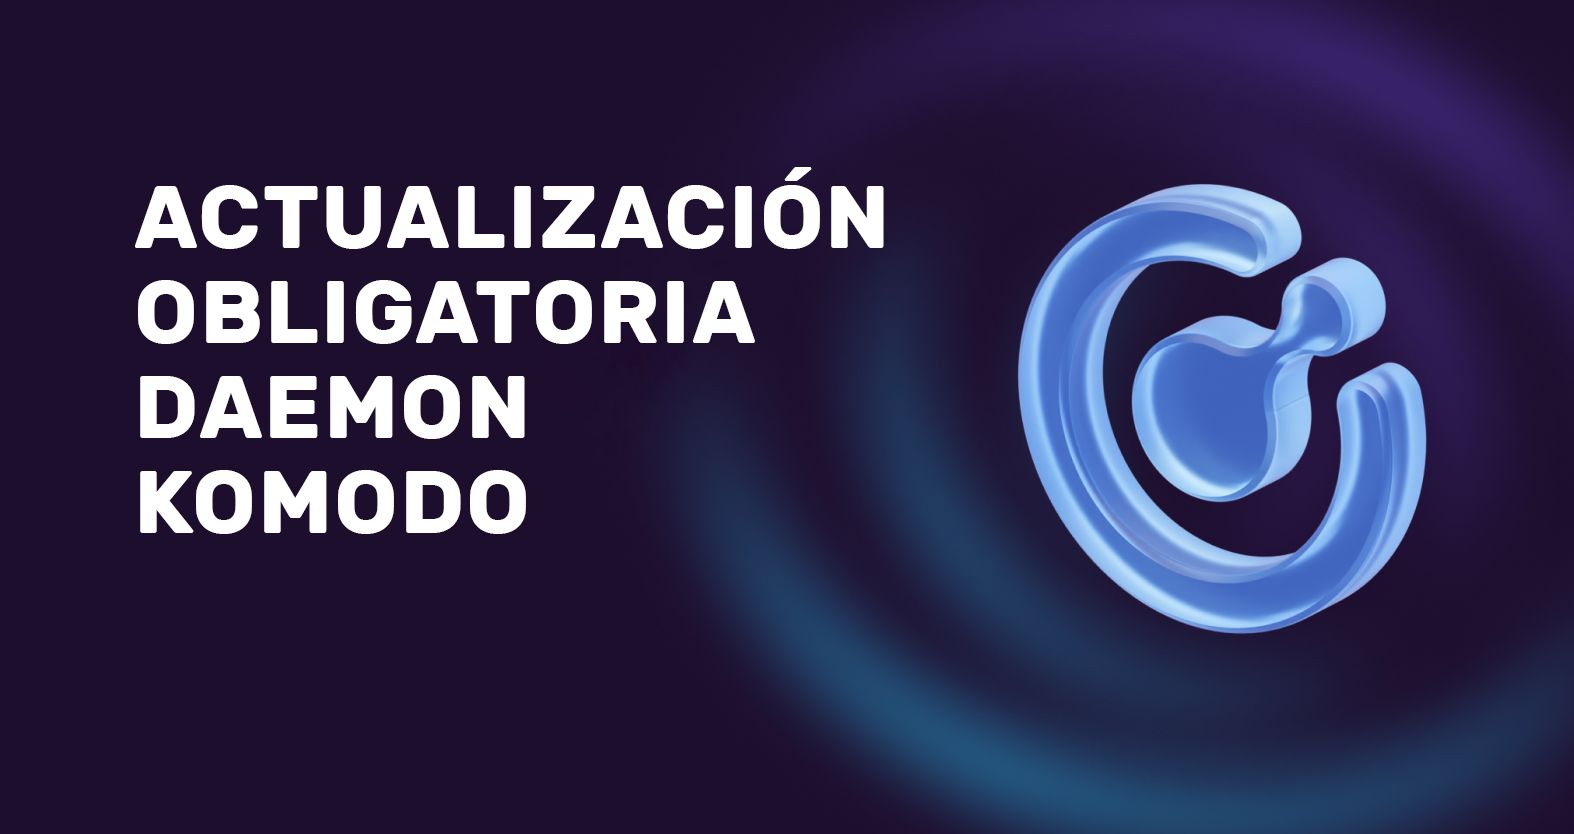 Actualización obligatoria del daemon Komodo antes del 29 de junio de 2023